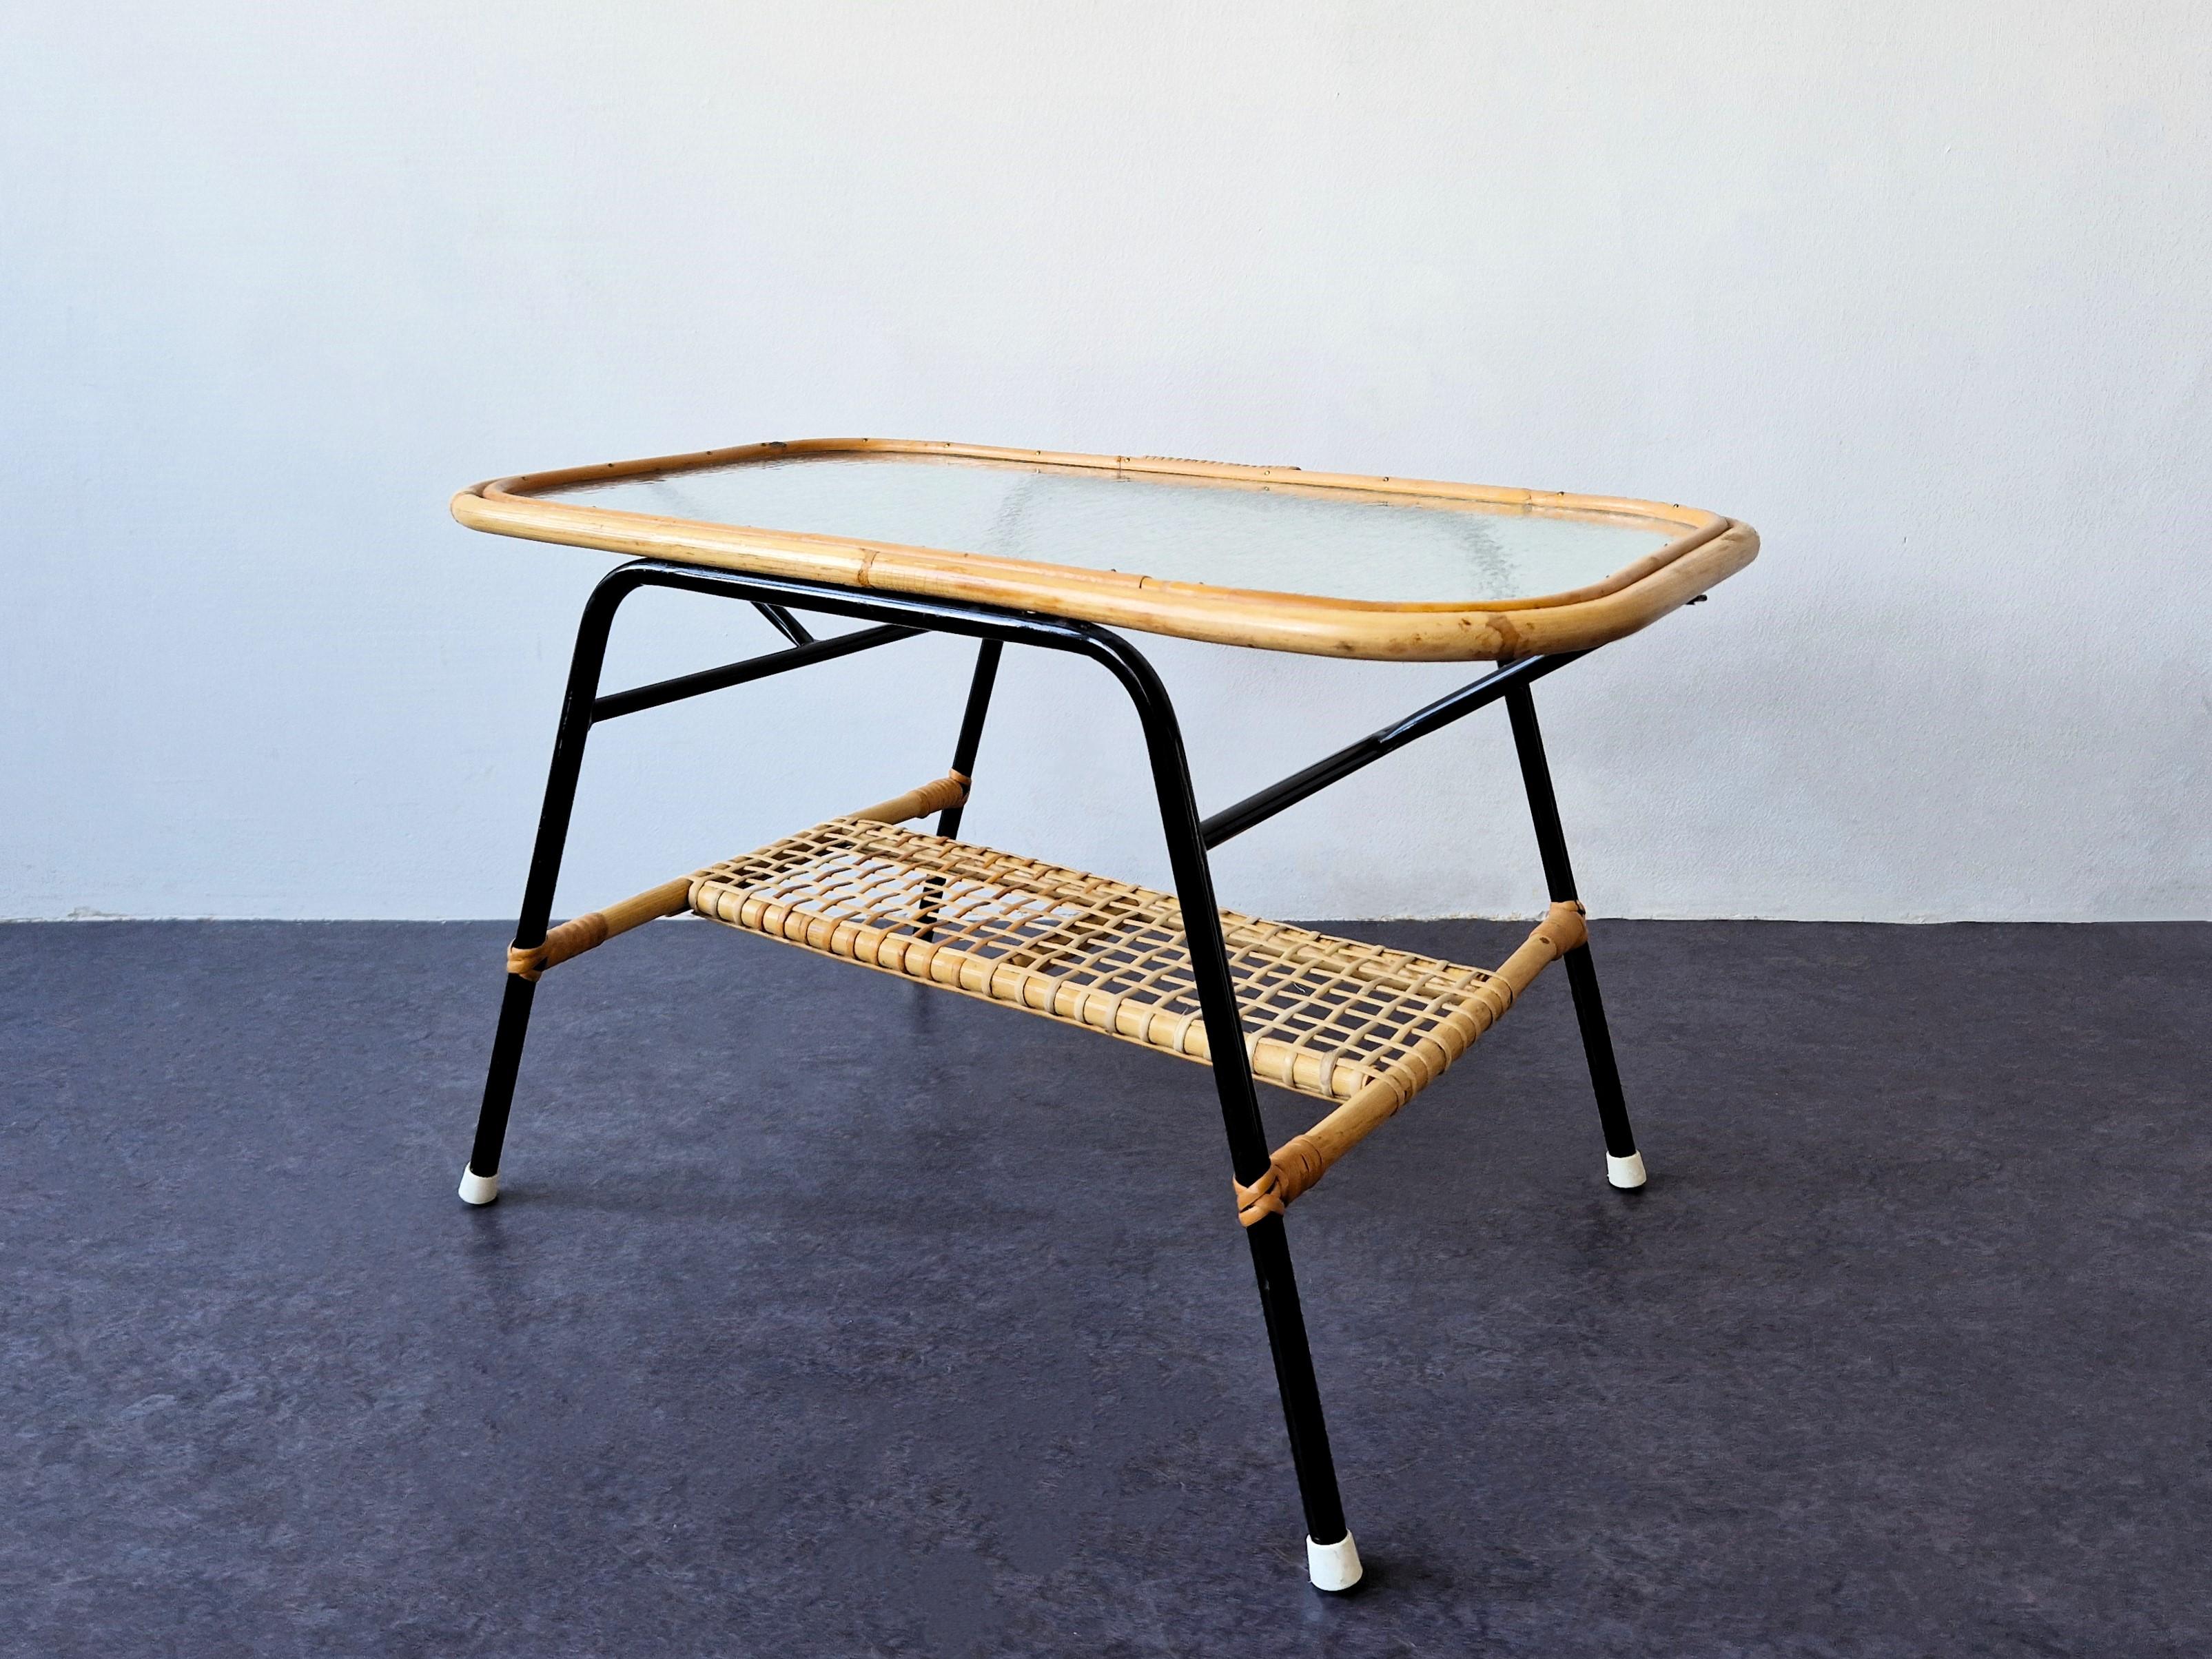 Dieser Couchtisch wurde in den 1950er Jahren für Rohé Noordwolde in den Niederlanden entworfen. Der Tisch hat ein schwarz lackiertes Metallgestell mit einer rechteckigen Tischplatte aus Rattan und Wolkenglas. Der schwarz lackierte Rahmen bildet